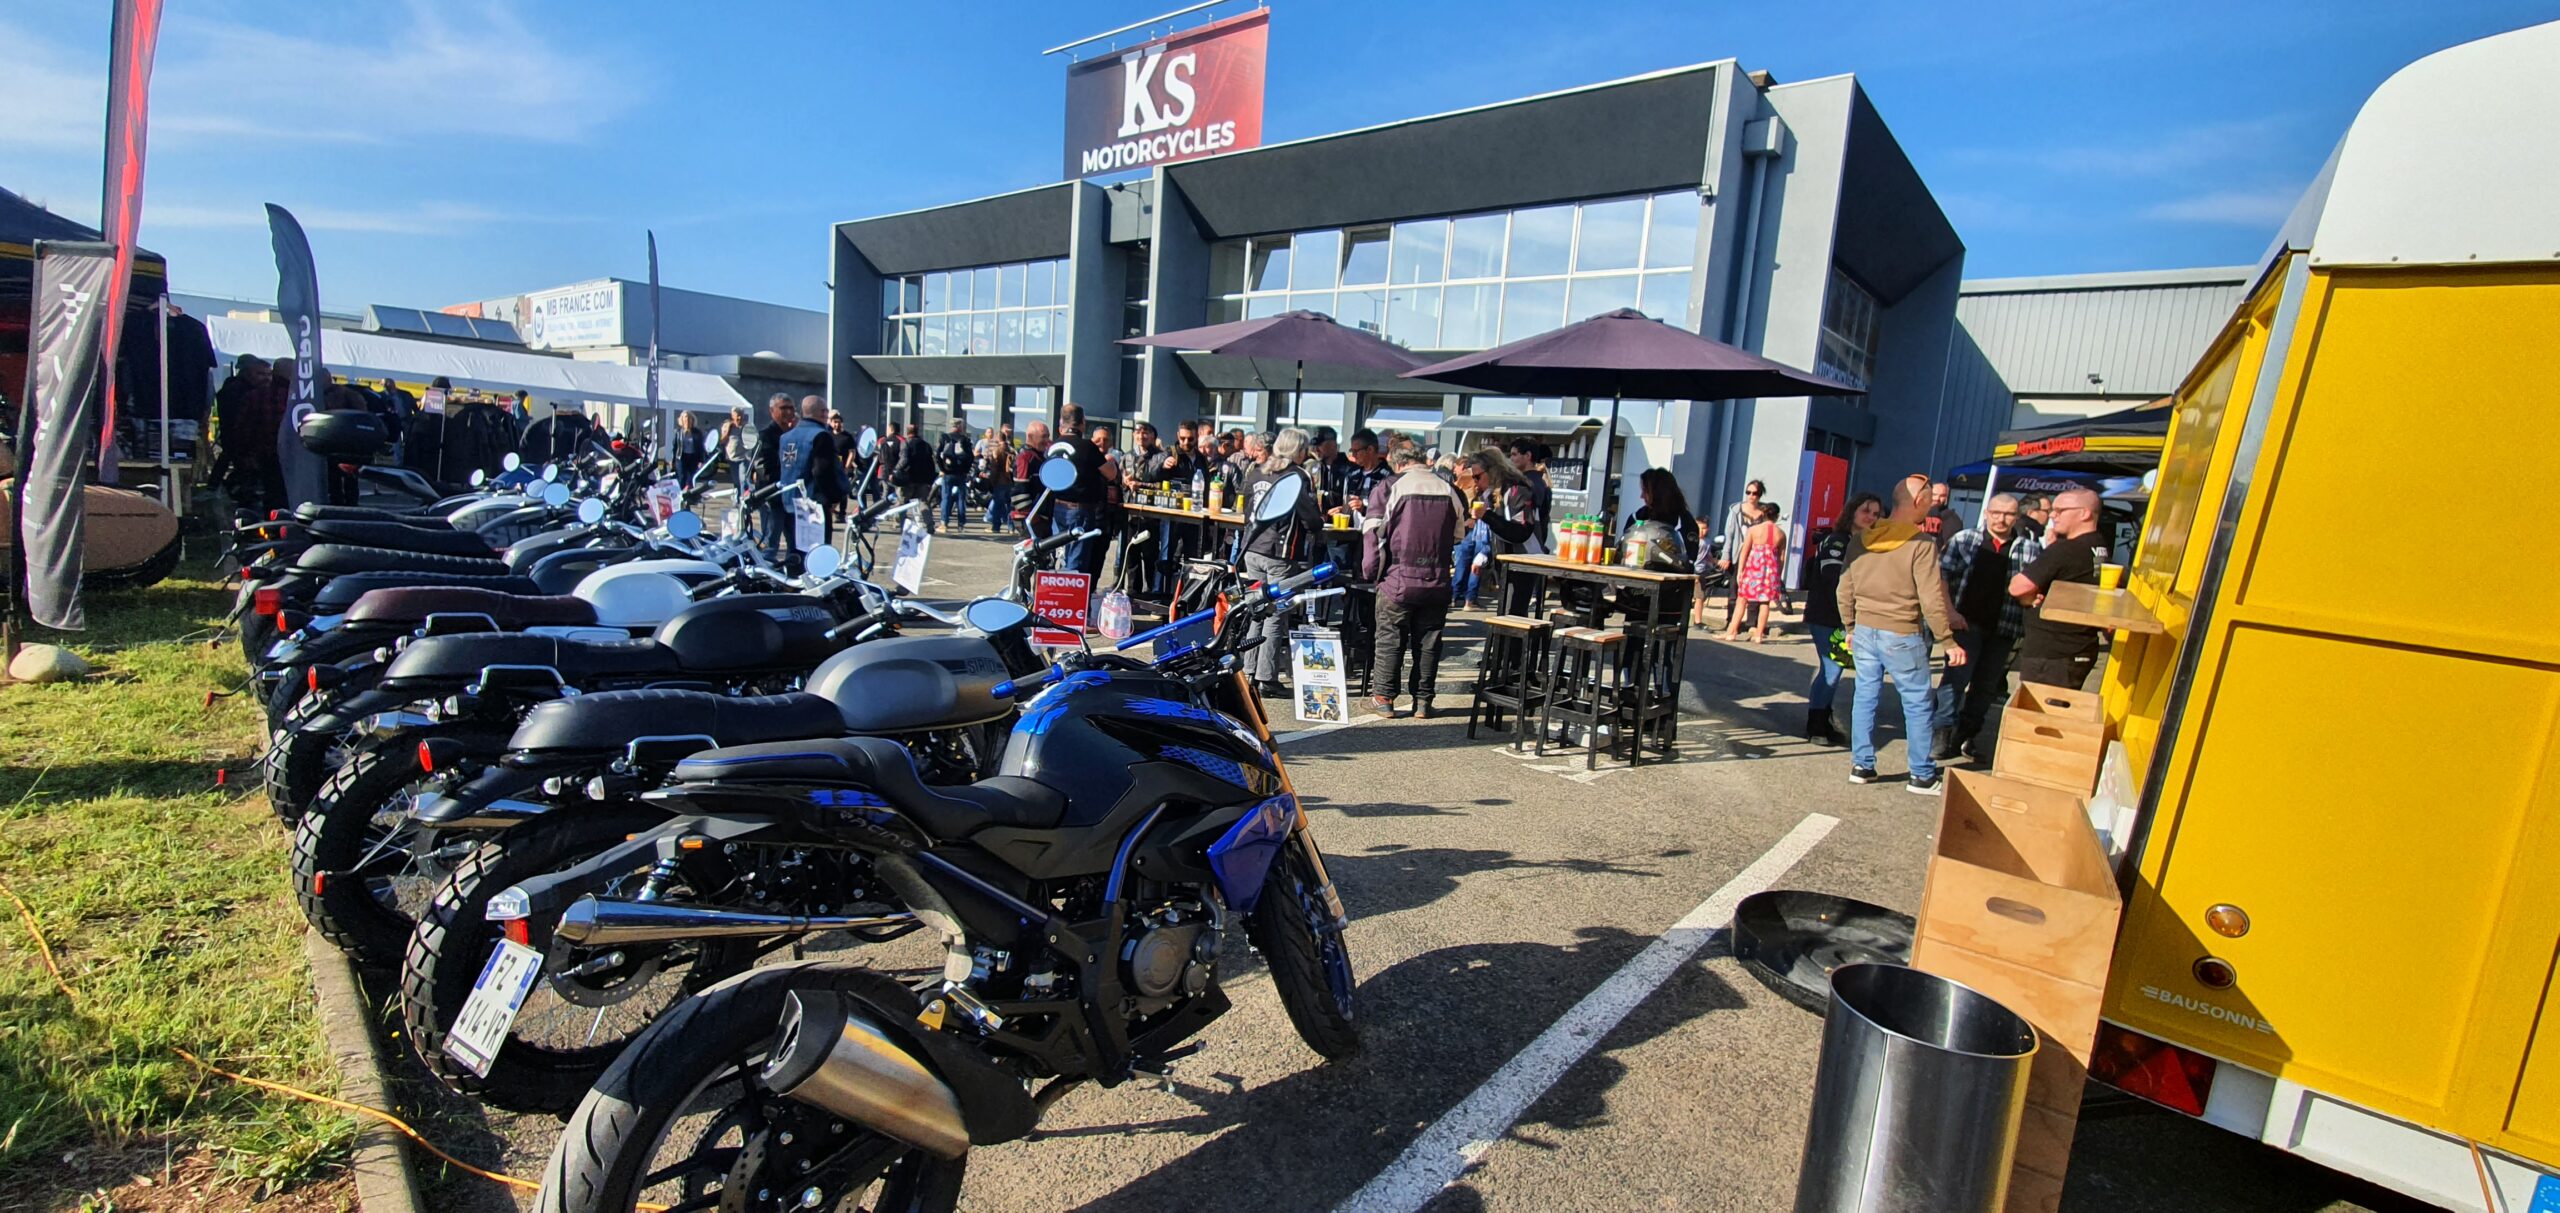 Dimanche 15 mai 2022, KS Motorcycles organisait une balade motos dans le beaujolais pour fêter ses 10 ans d'existence. Photos by MMK.